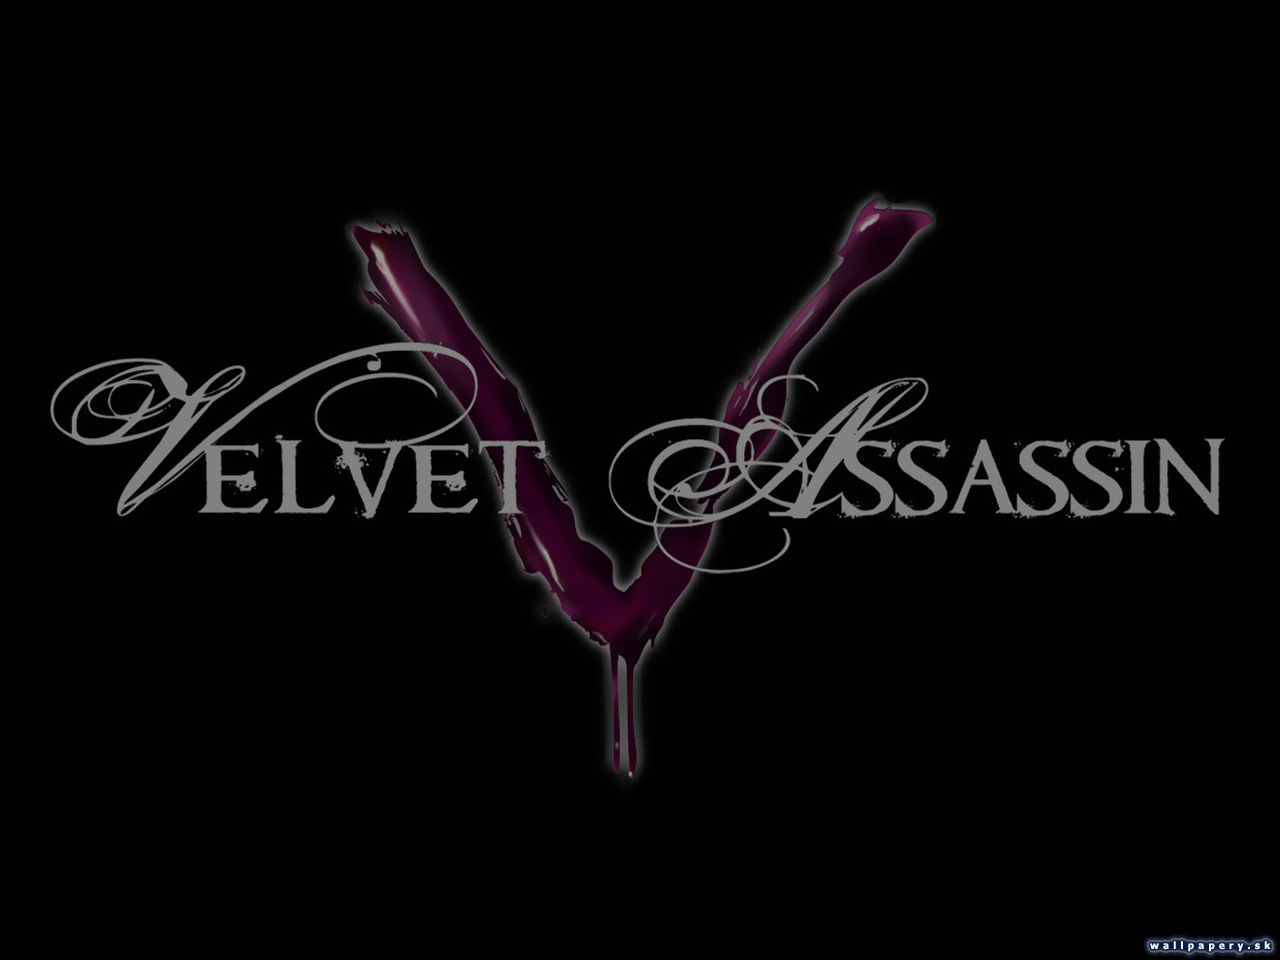 Velvet Assassin Wallpaper Abcgames Cz